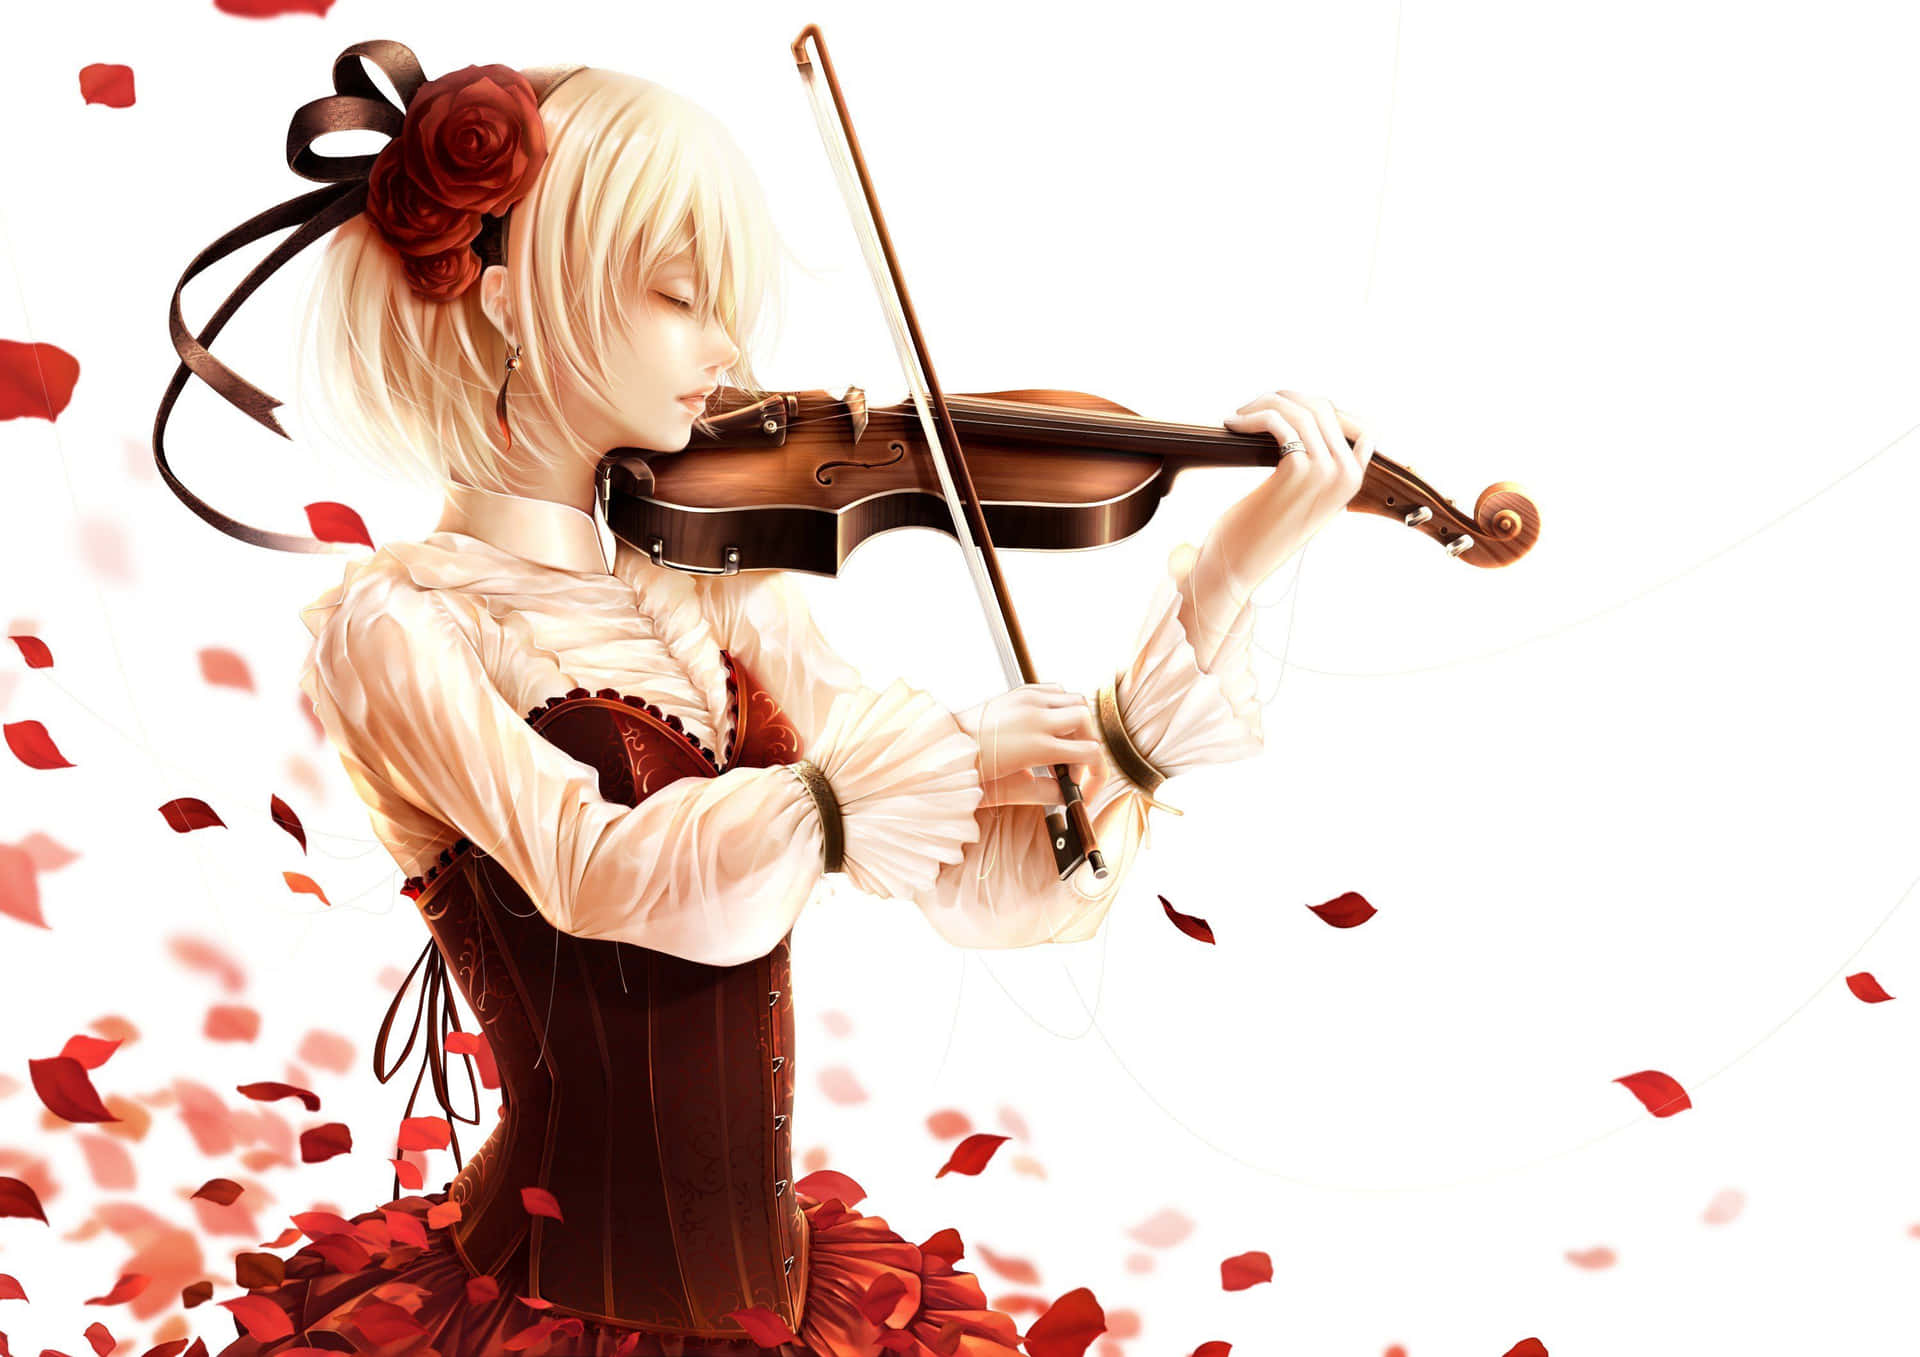 ArtStation - Violin